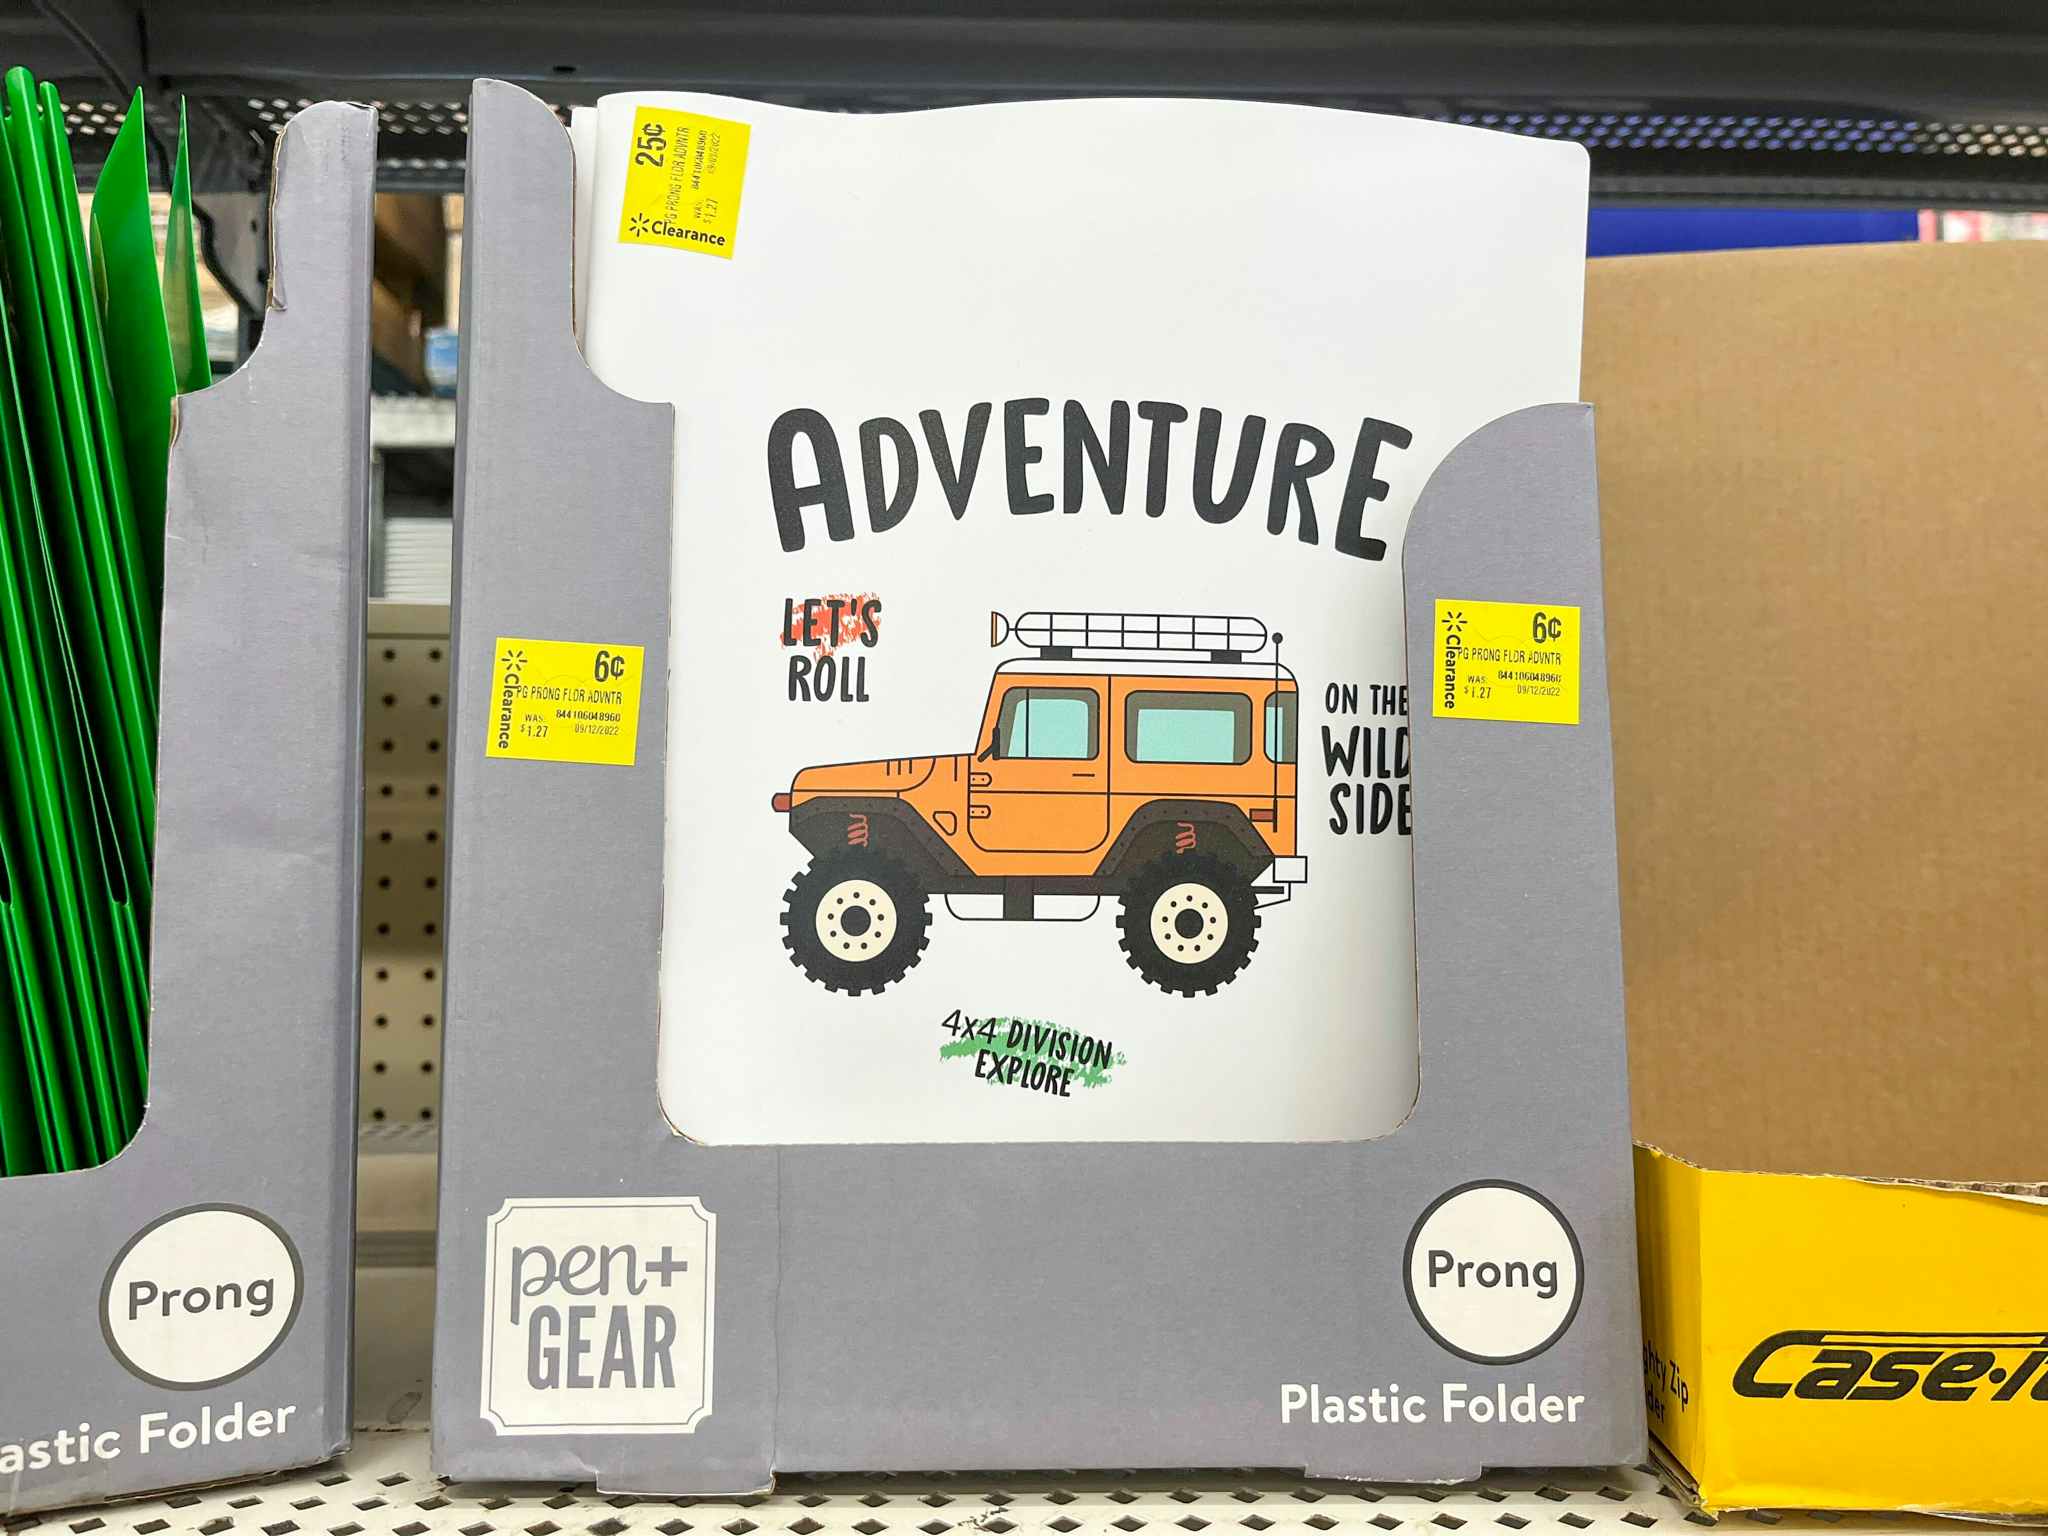 pen + gear jeep folder on walmart shelf